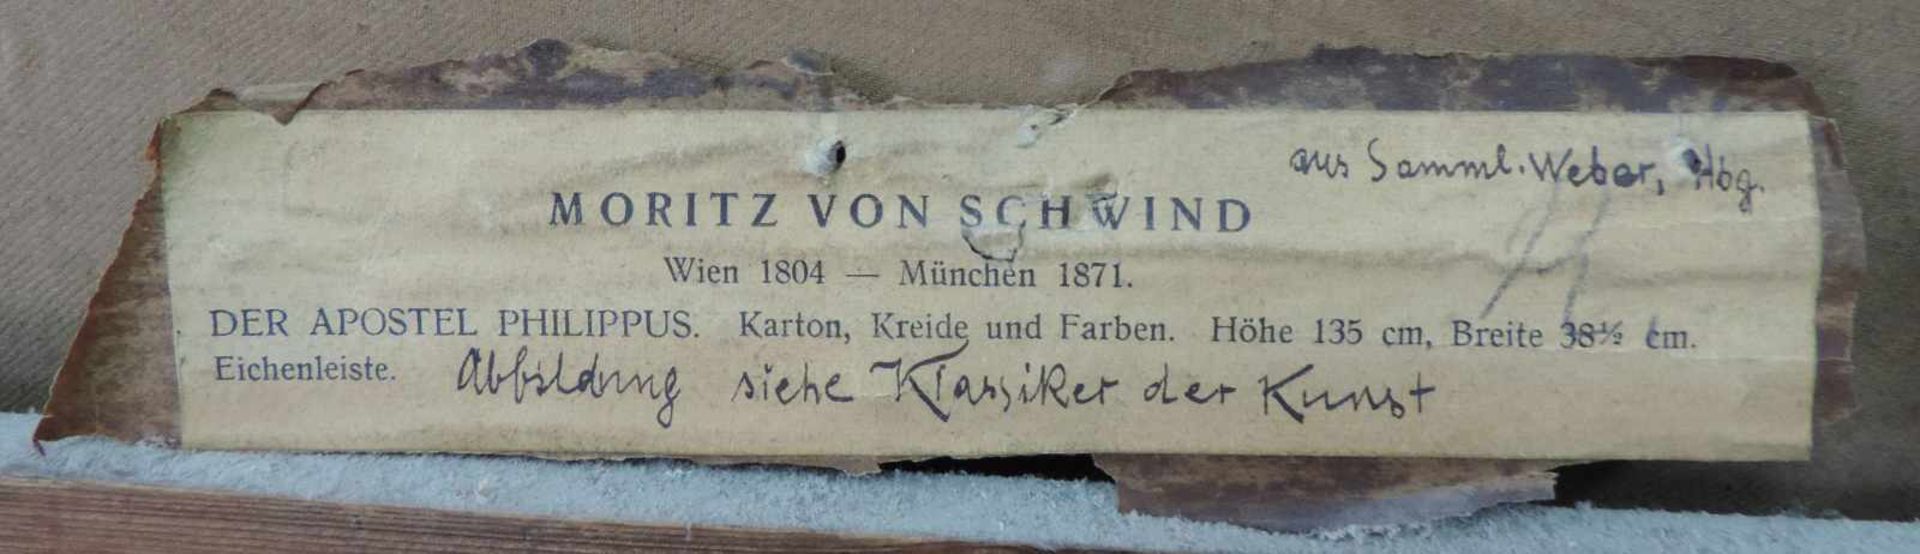 Moritz VON SCHWIND (1804 - 1871). Der Apostel Philipus. 135 cm x 38,5 cm. Karton, Kreide und Farben. - Image 6 of 6